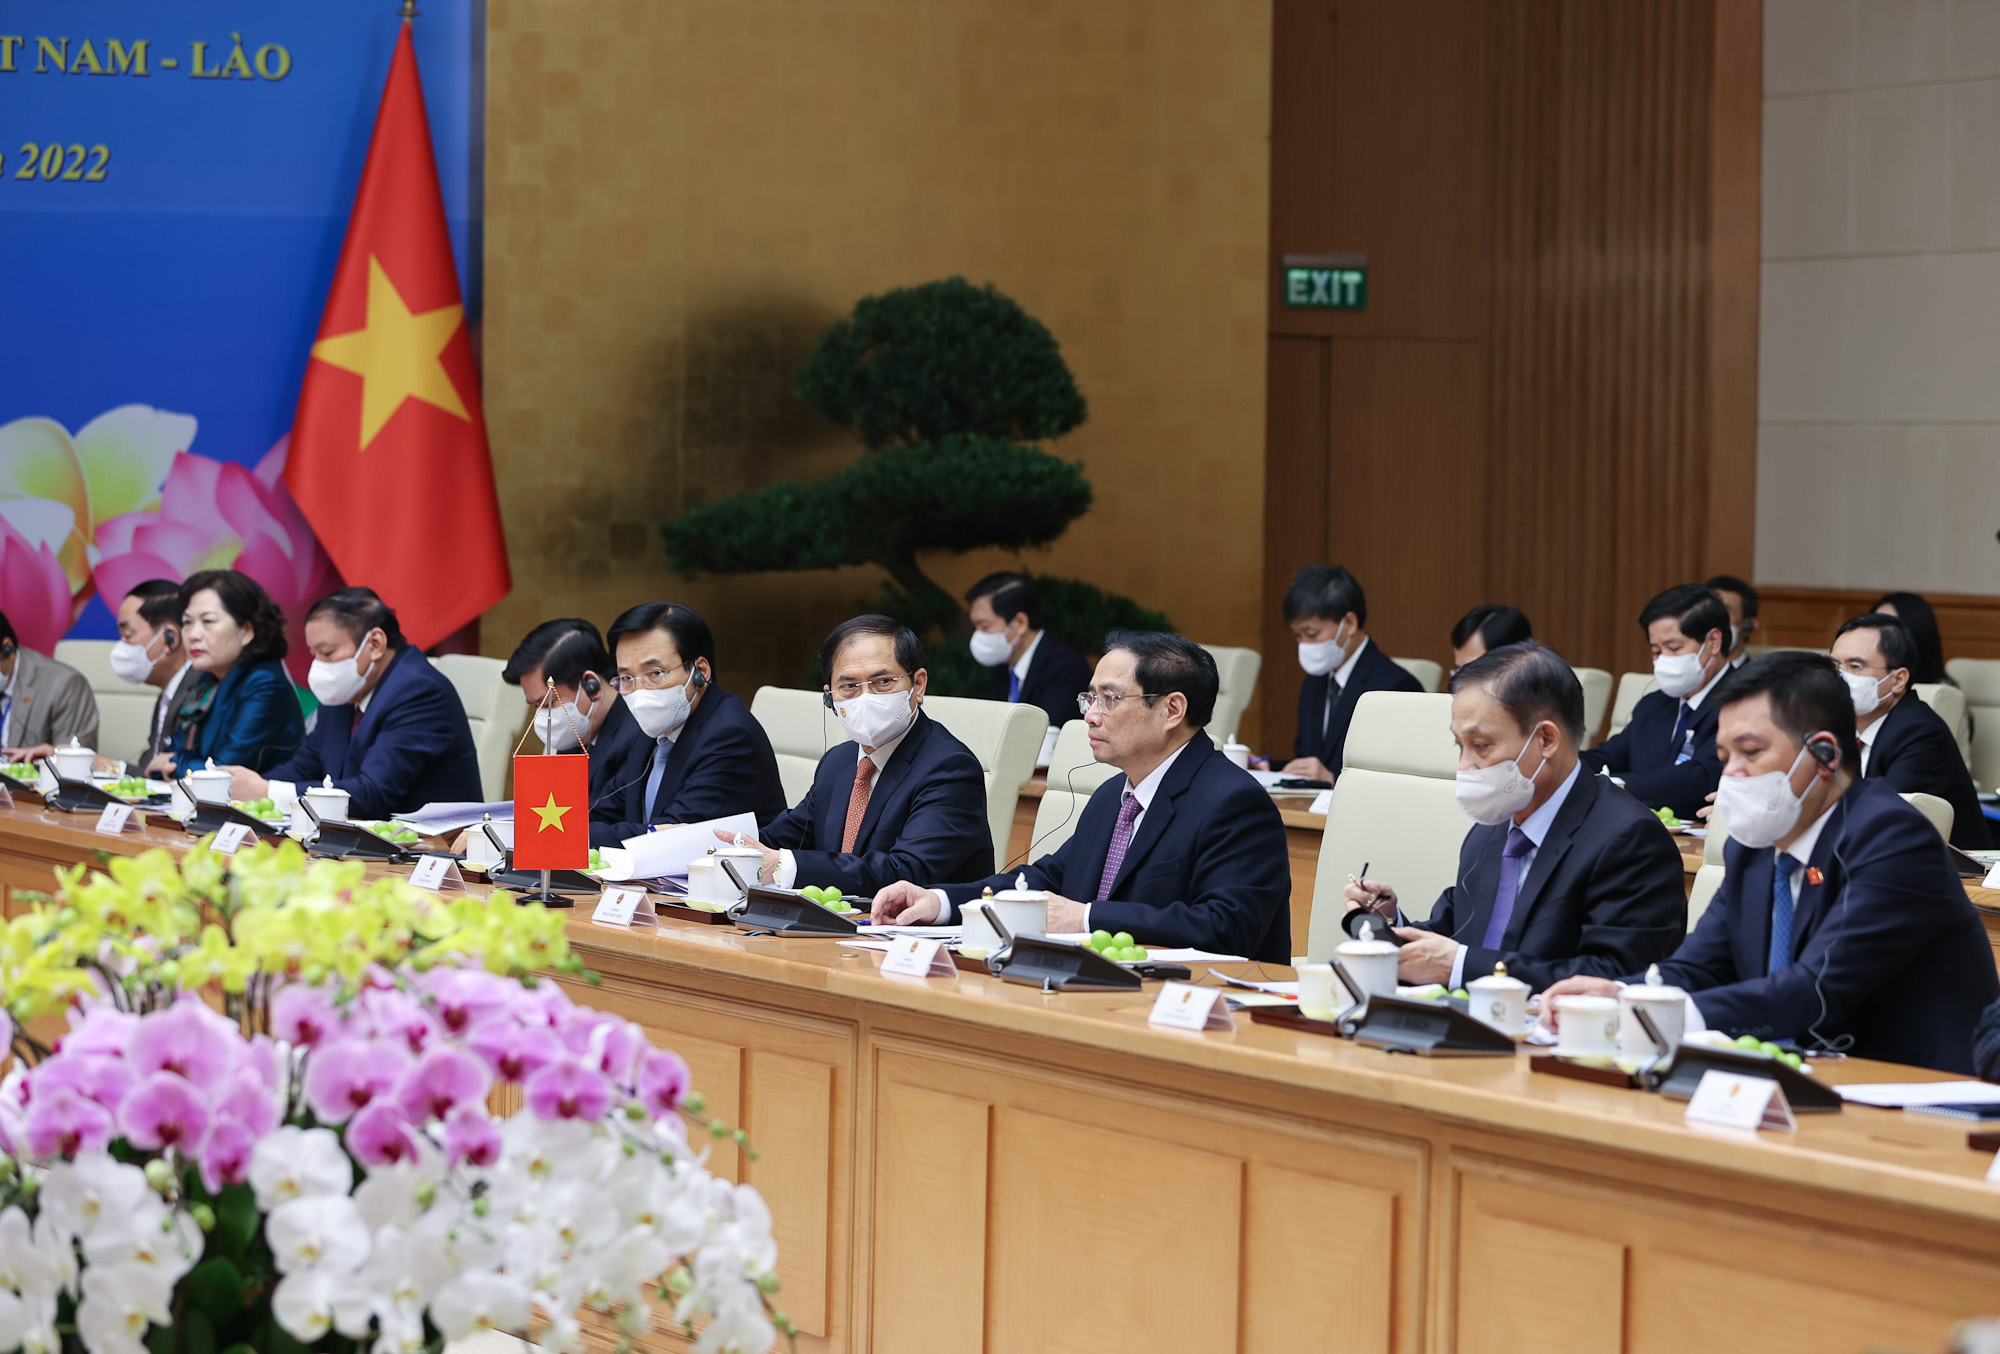 Chùm ảnh: Kỳ họp lần thứ 44 Ủy ban liên Chính phủ về hợp tác song phương Việt Nam-Lào - Ảnh 5.